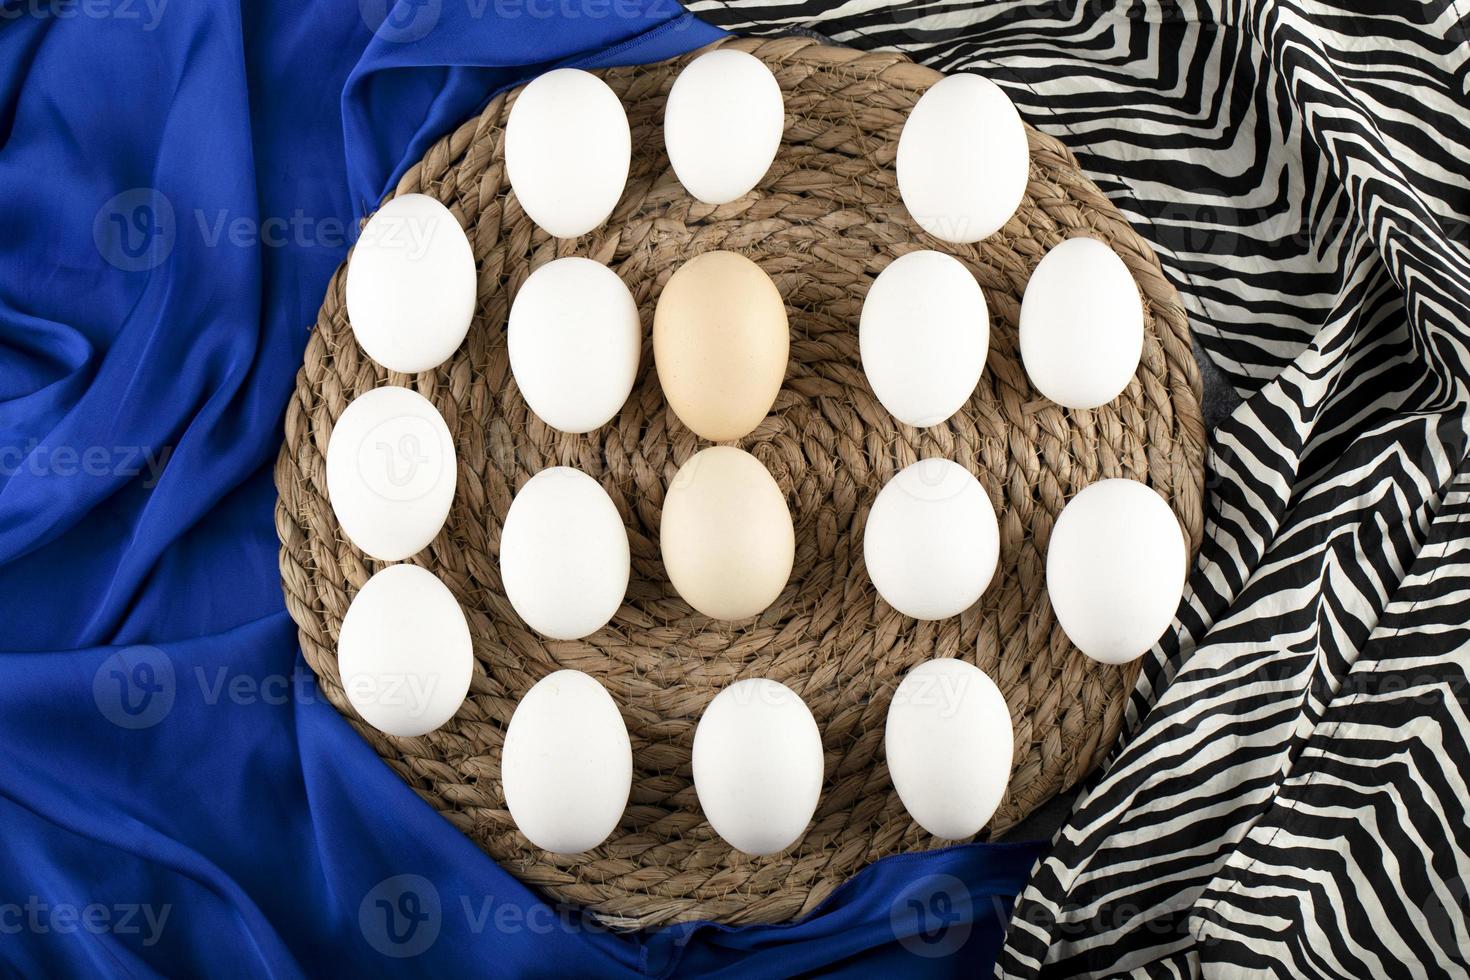 bruine en witte rauwe kippeneieren op een houten stuk op blauwe doek foto